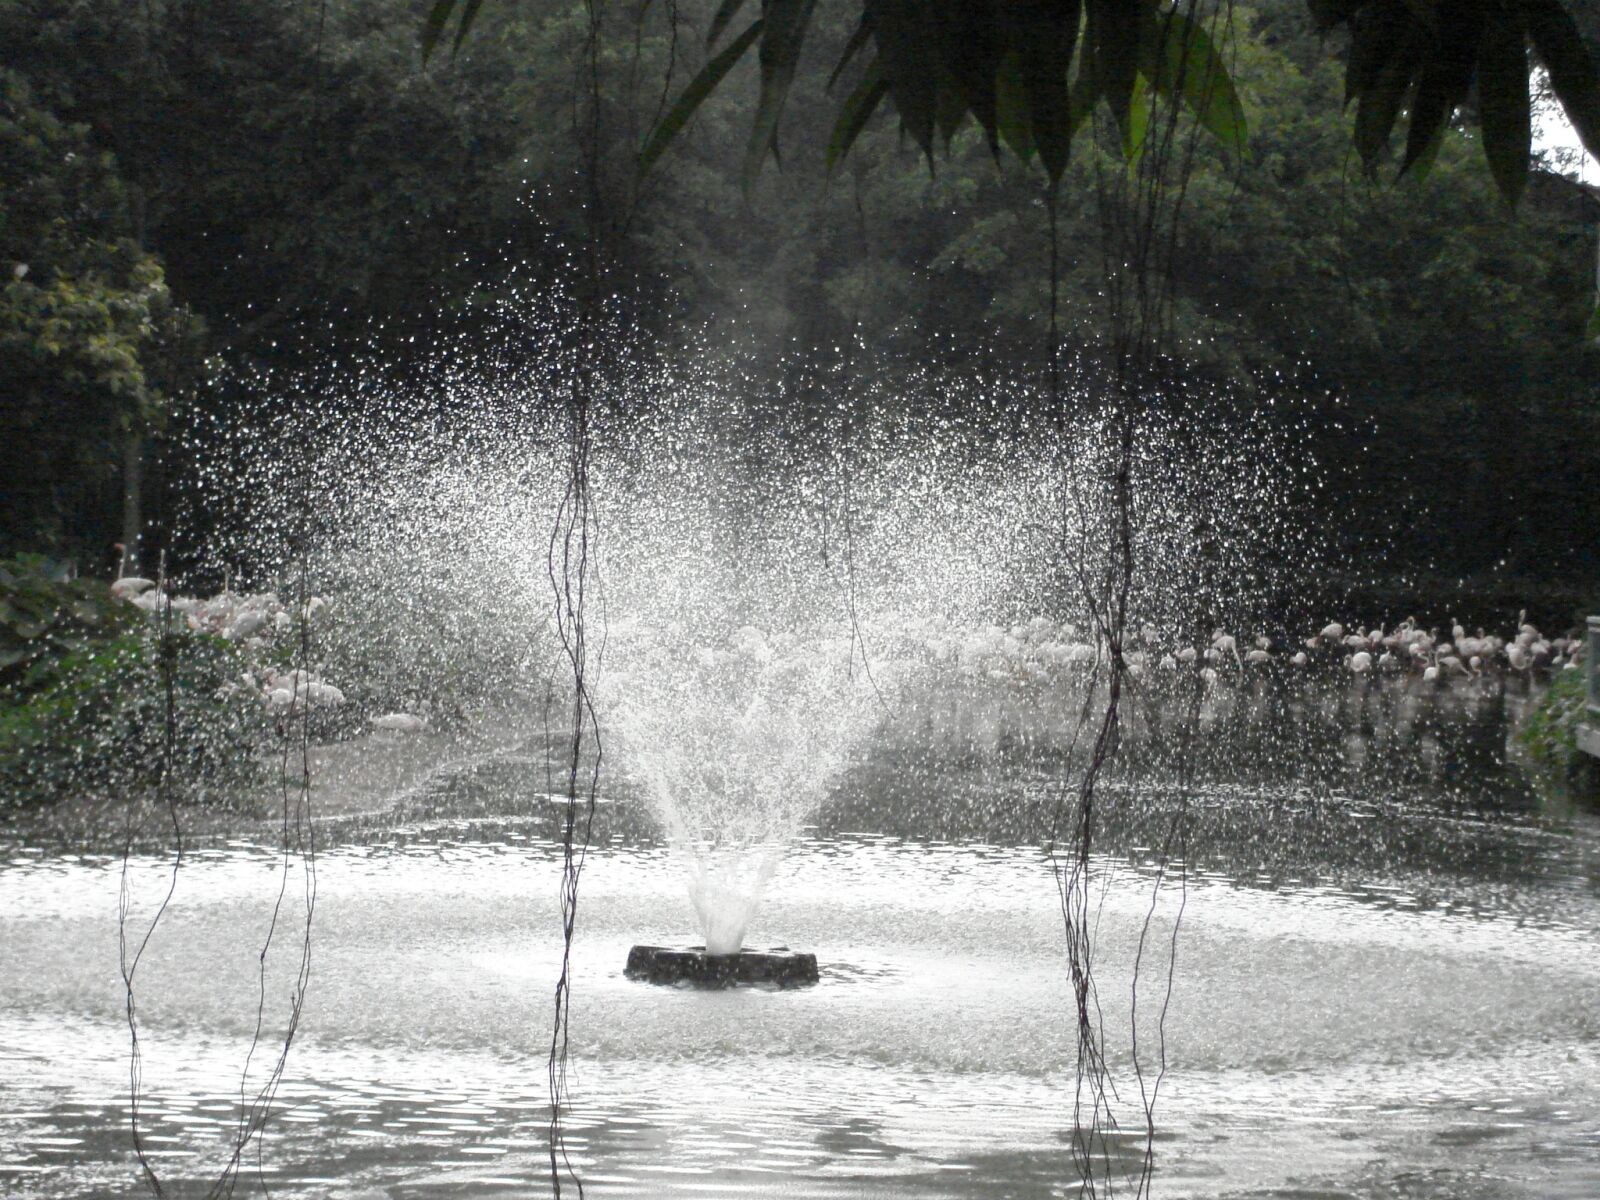 Sony DSC-S600 sample photo. Fountain, spray, aqua photography